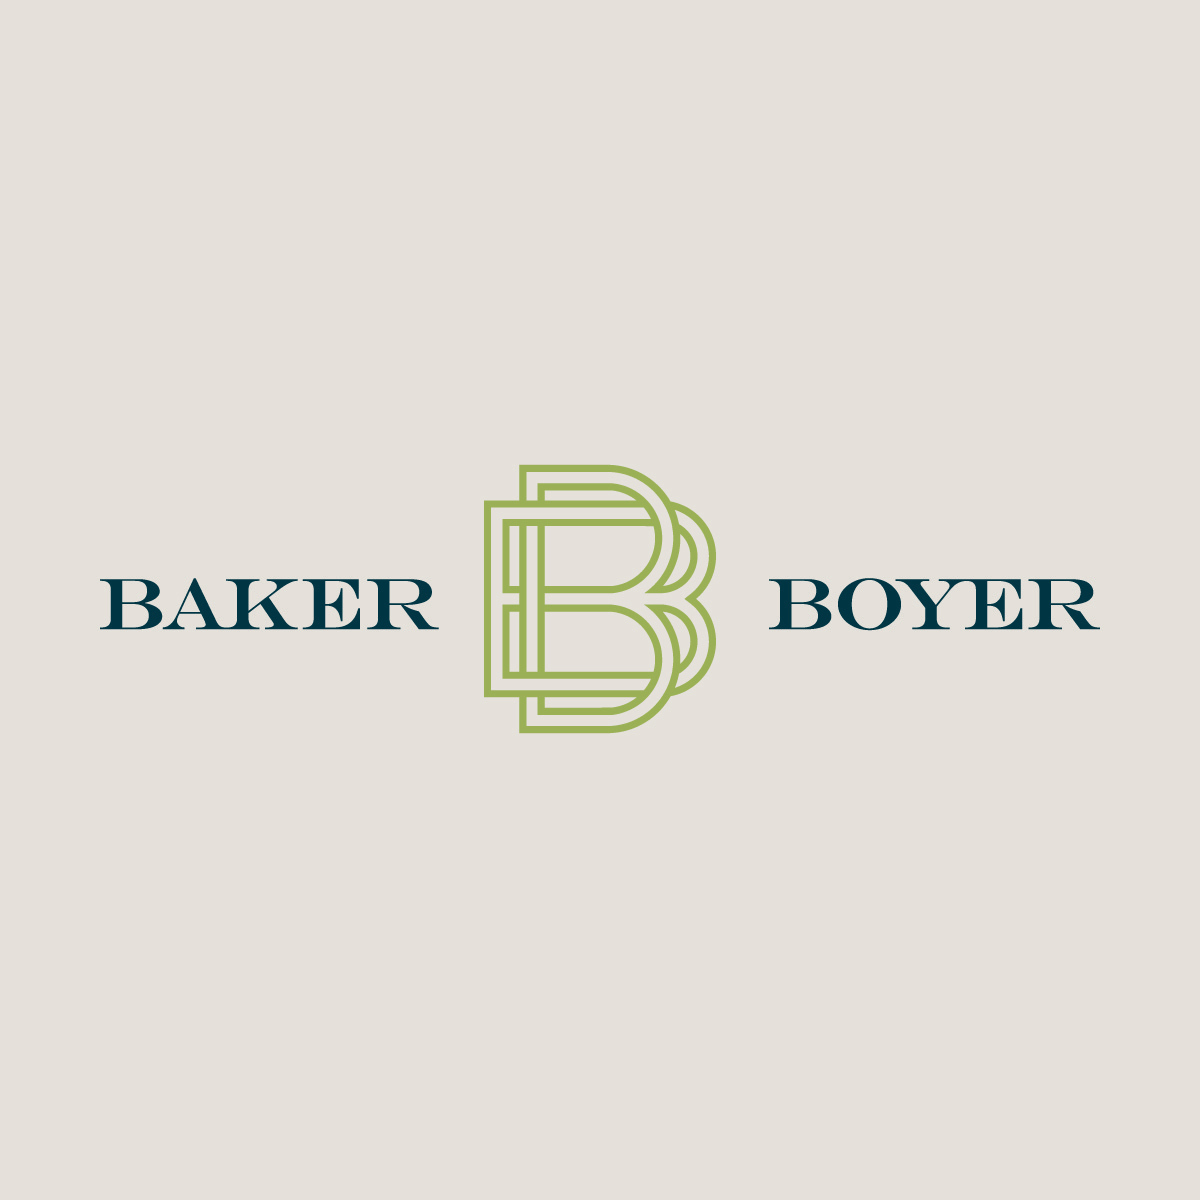 Baker Boyer Bank